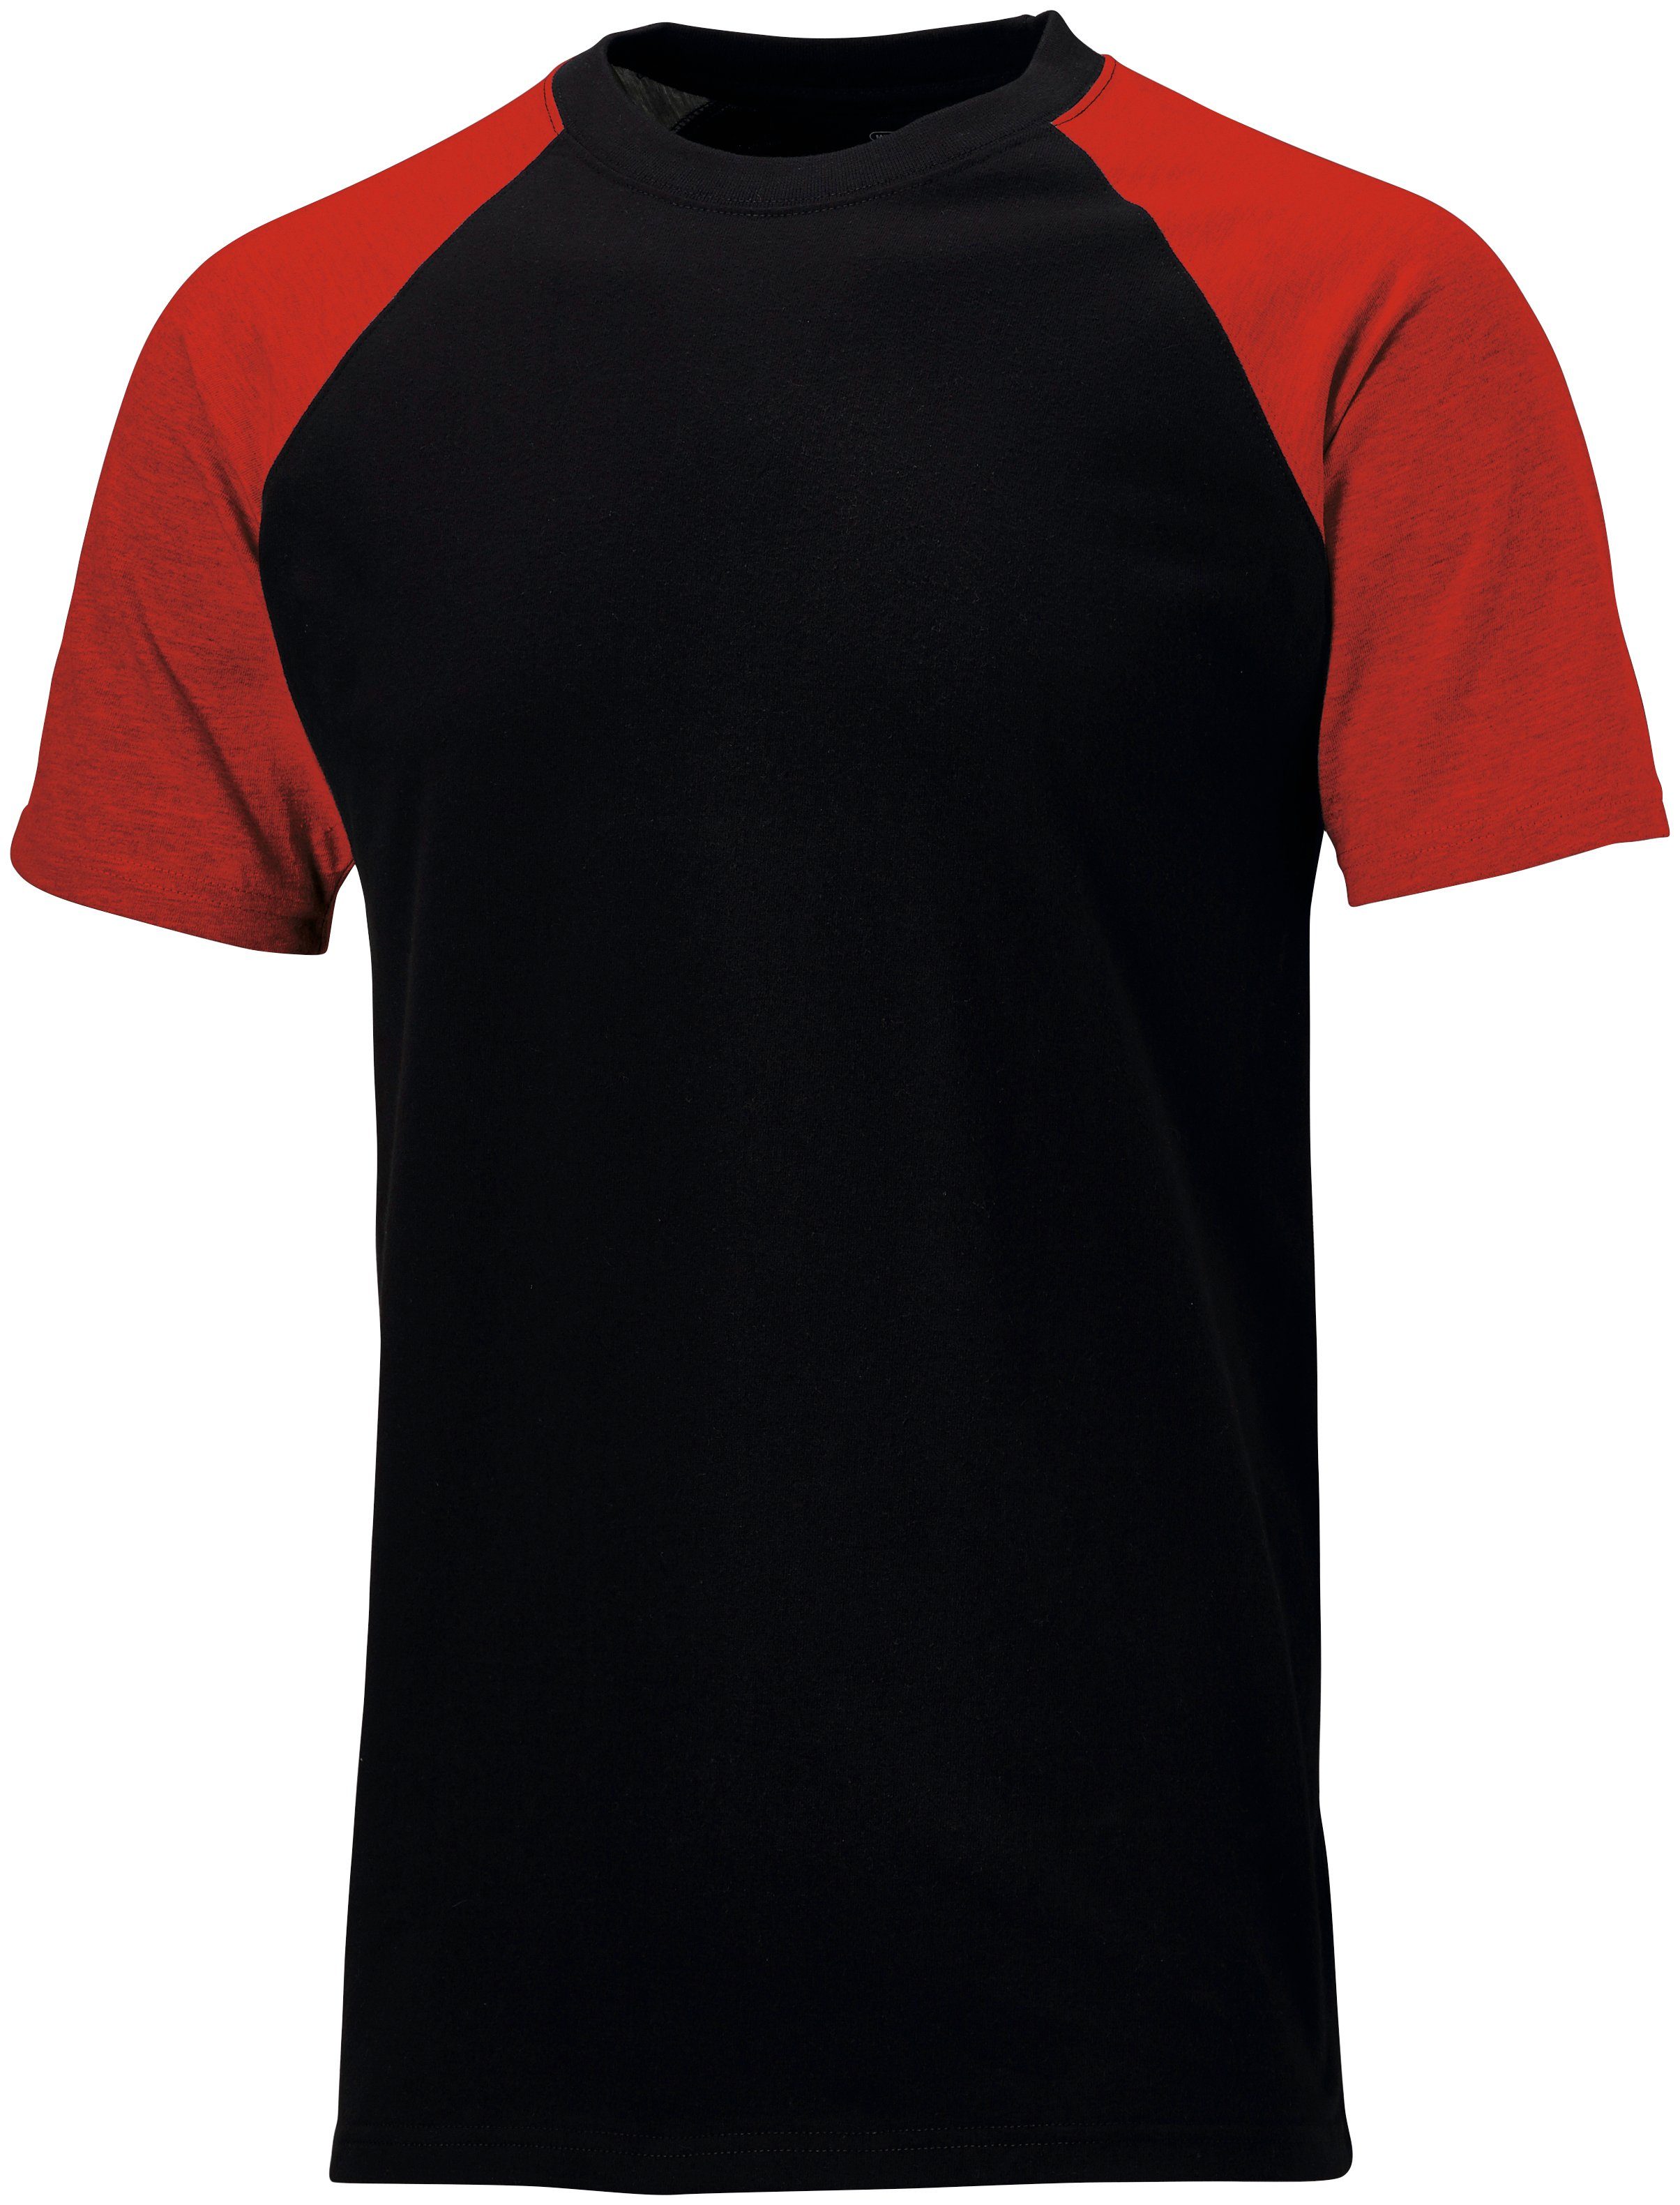 schwarz-rot S Gr. 3XL - Dickies T-Shirt